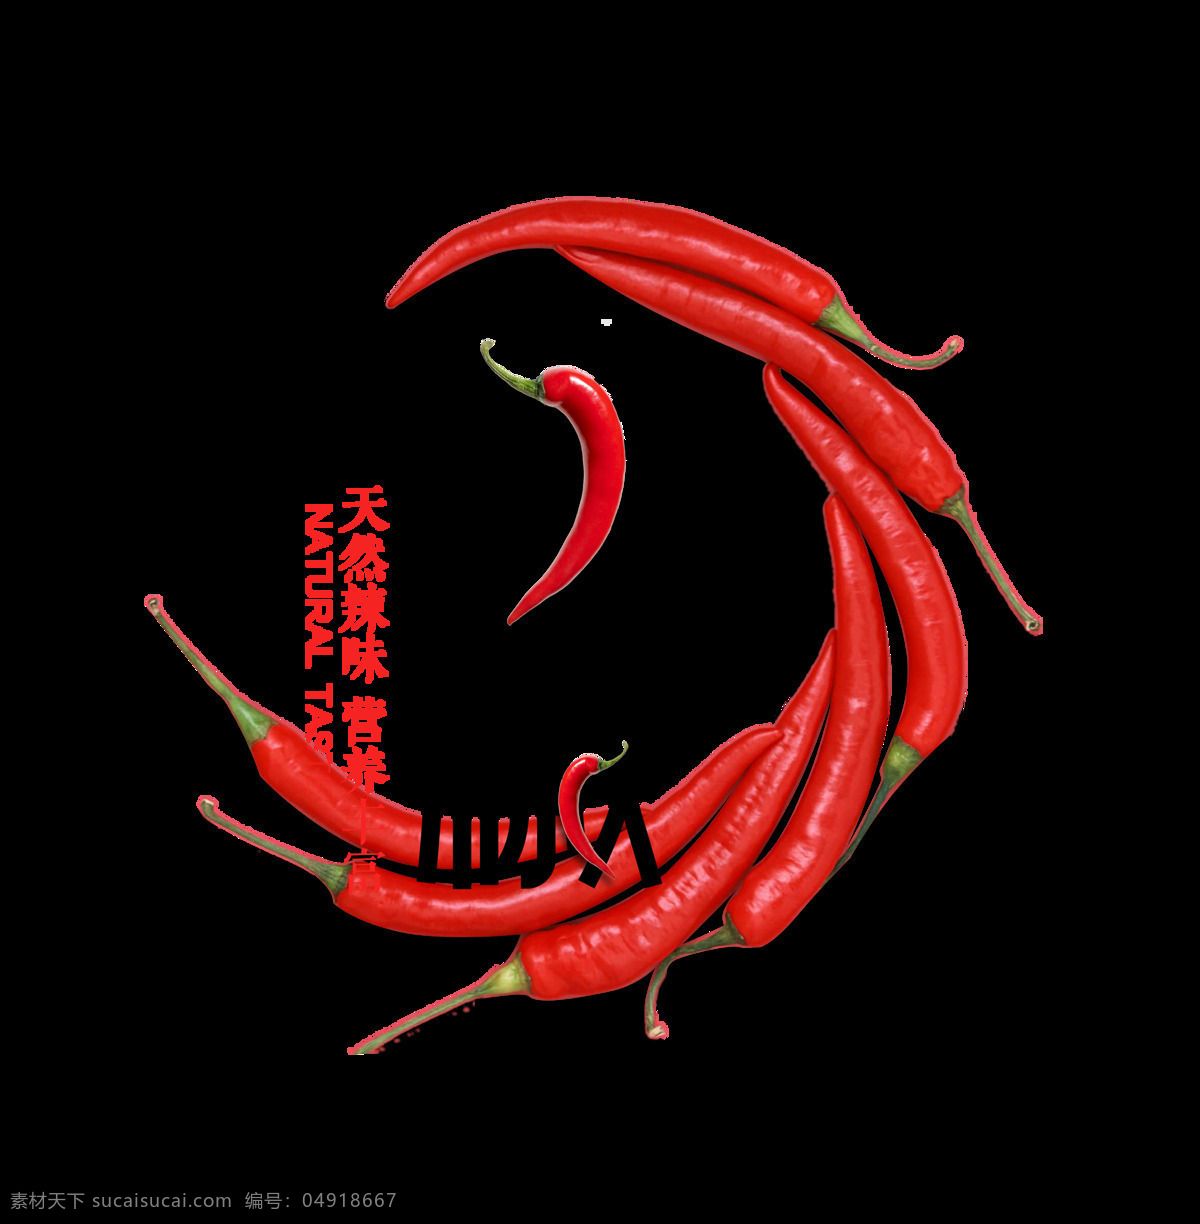 辣椒 有机 艺术 字 绿色 餐饮 字体 天然 有机辣椒 食材 艺术字 海报